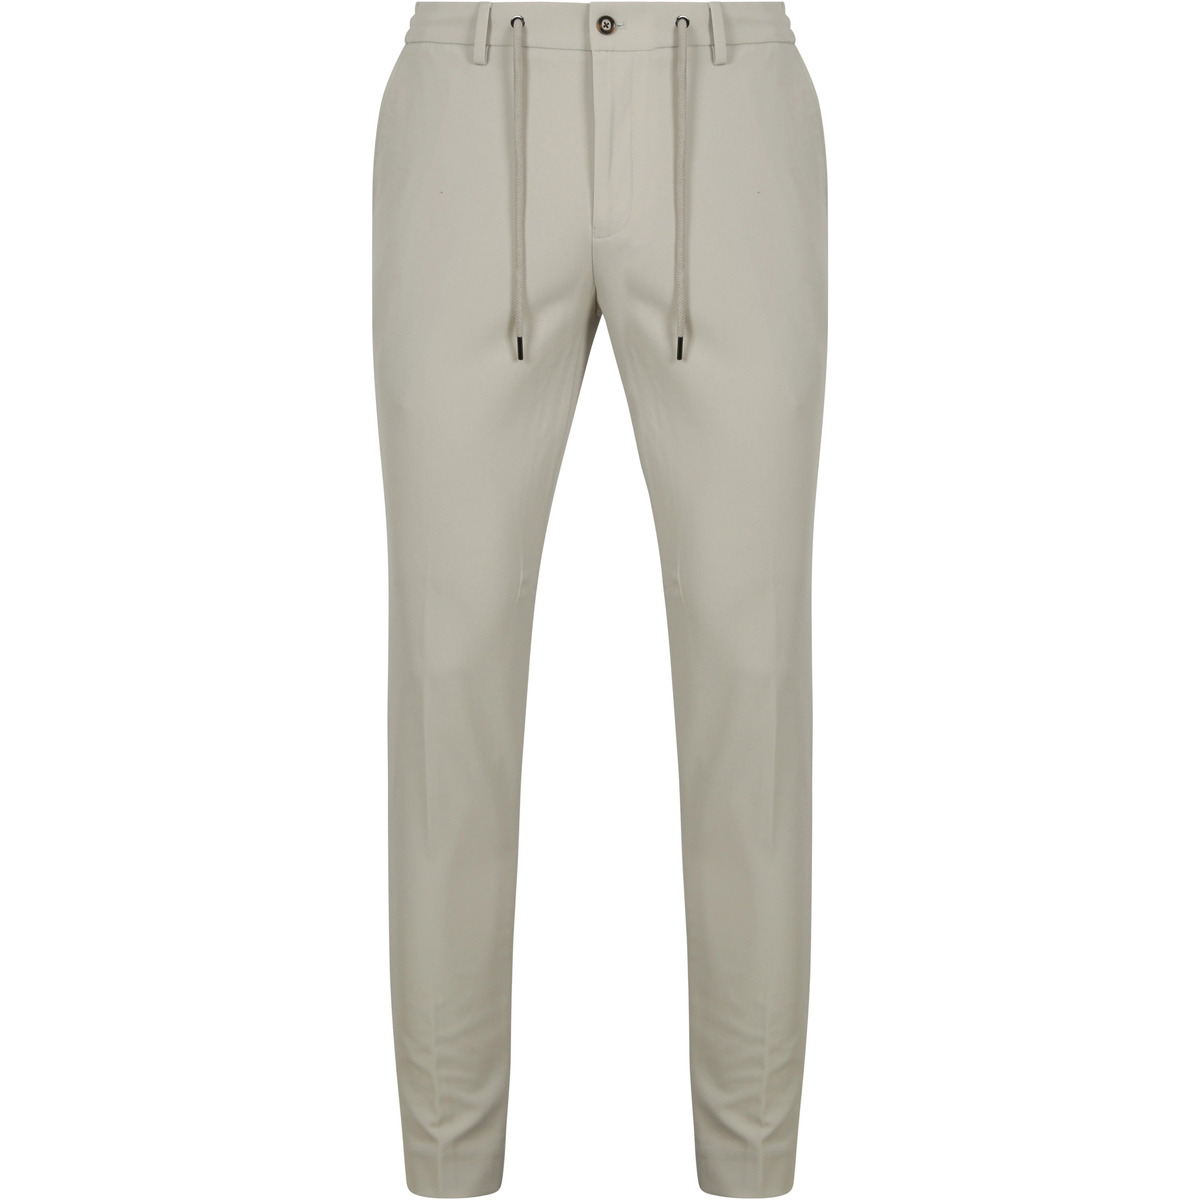 Textiel Heren Broeken / Pantalons Suitable Dace Pantalon Ecru Beige